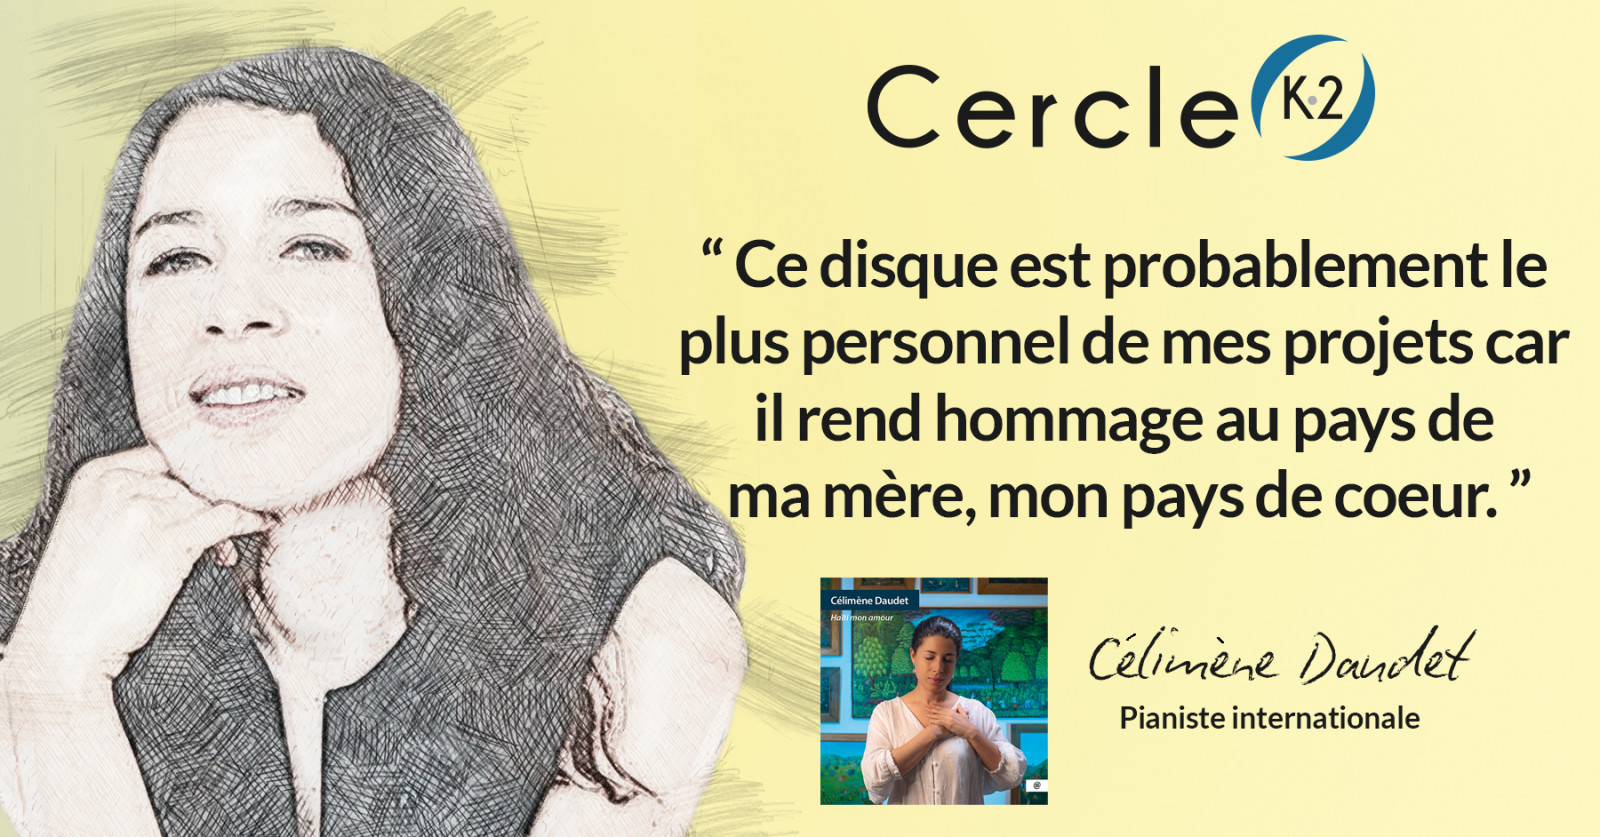 Entretien avec Célimène Daudet pour la sortie de son album "Haïti mon amour" - Cercle K2